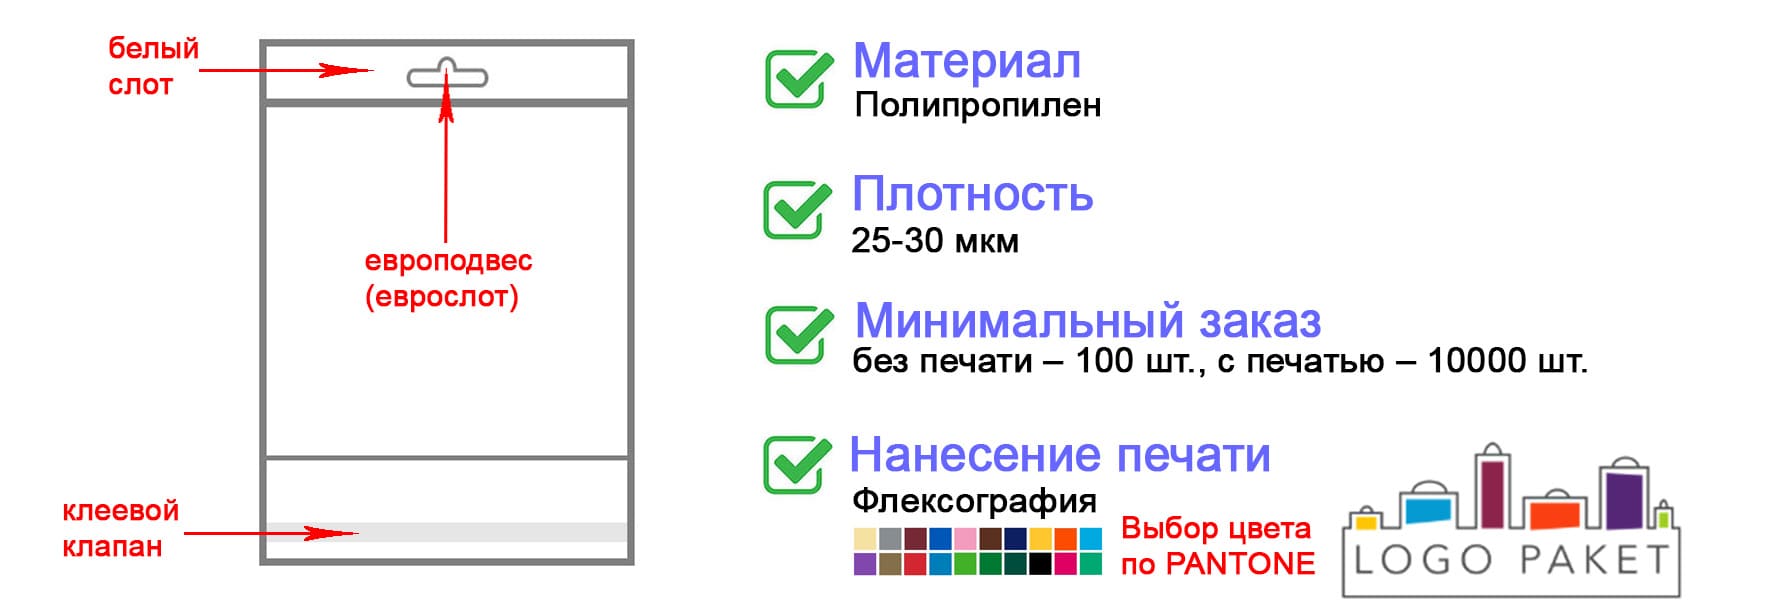 ПП пакет с белым слотом инфографика